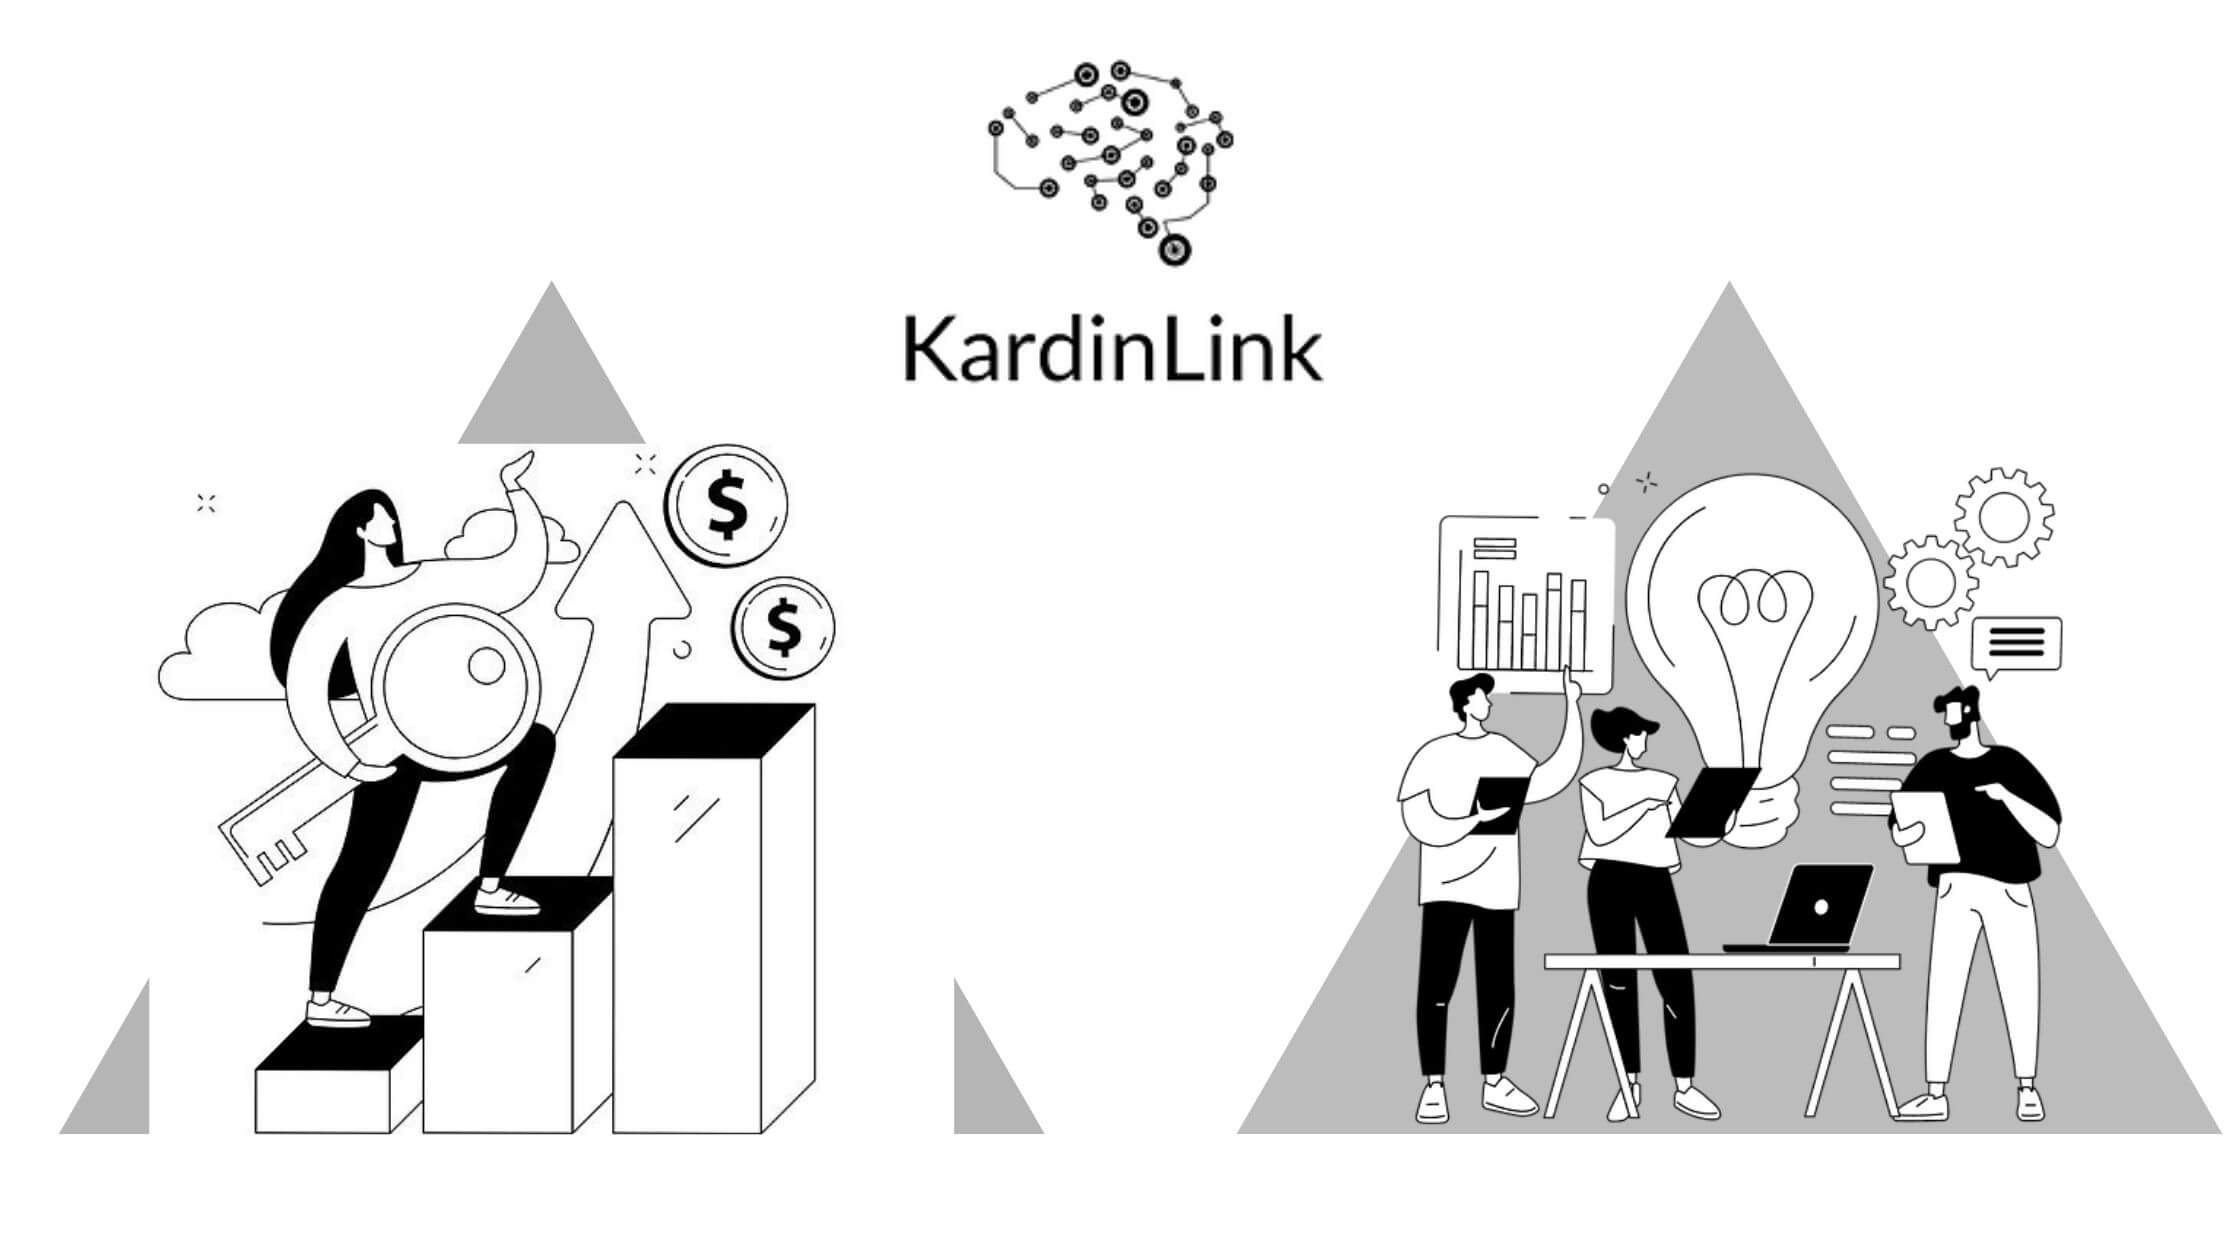 KardinLink Program Benefits